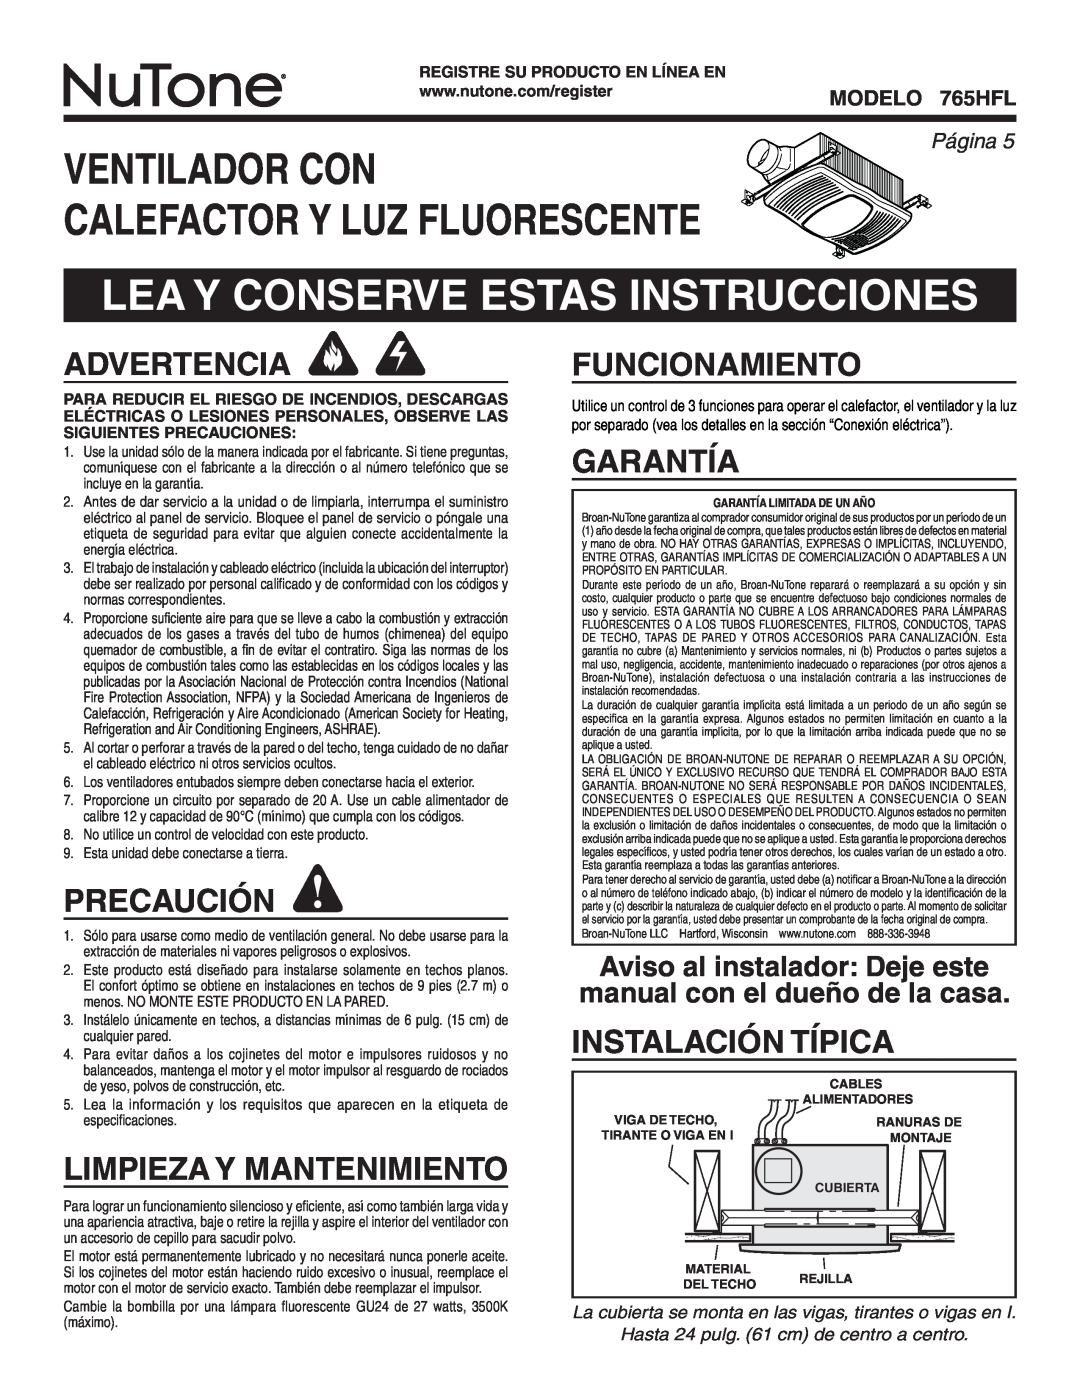 NuTone 765HFL Ventilador Con Calefactor Y Luz Fluorescente, Lea Y Conserve Estas Instrucciones, Advertencia, Precaución 